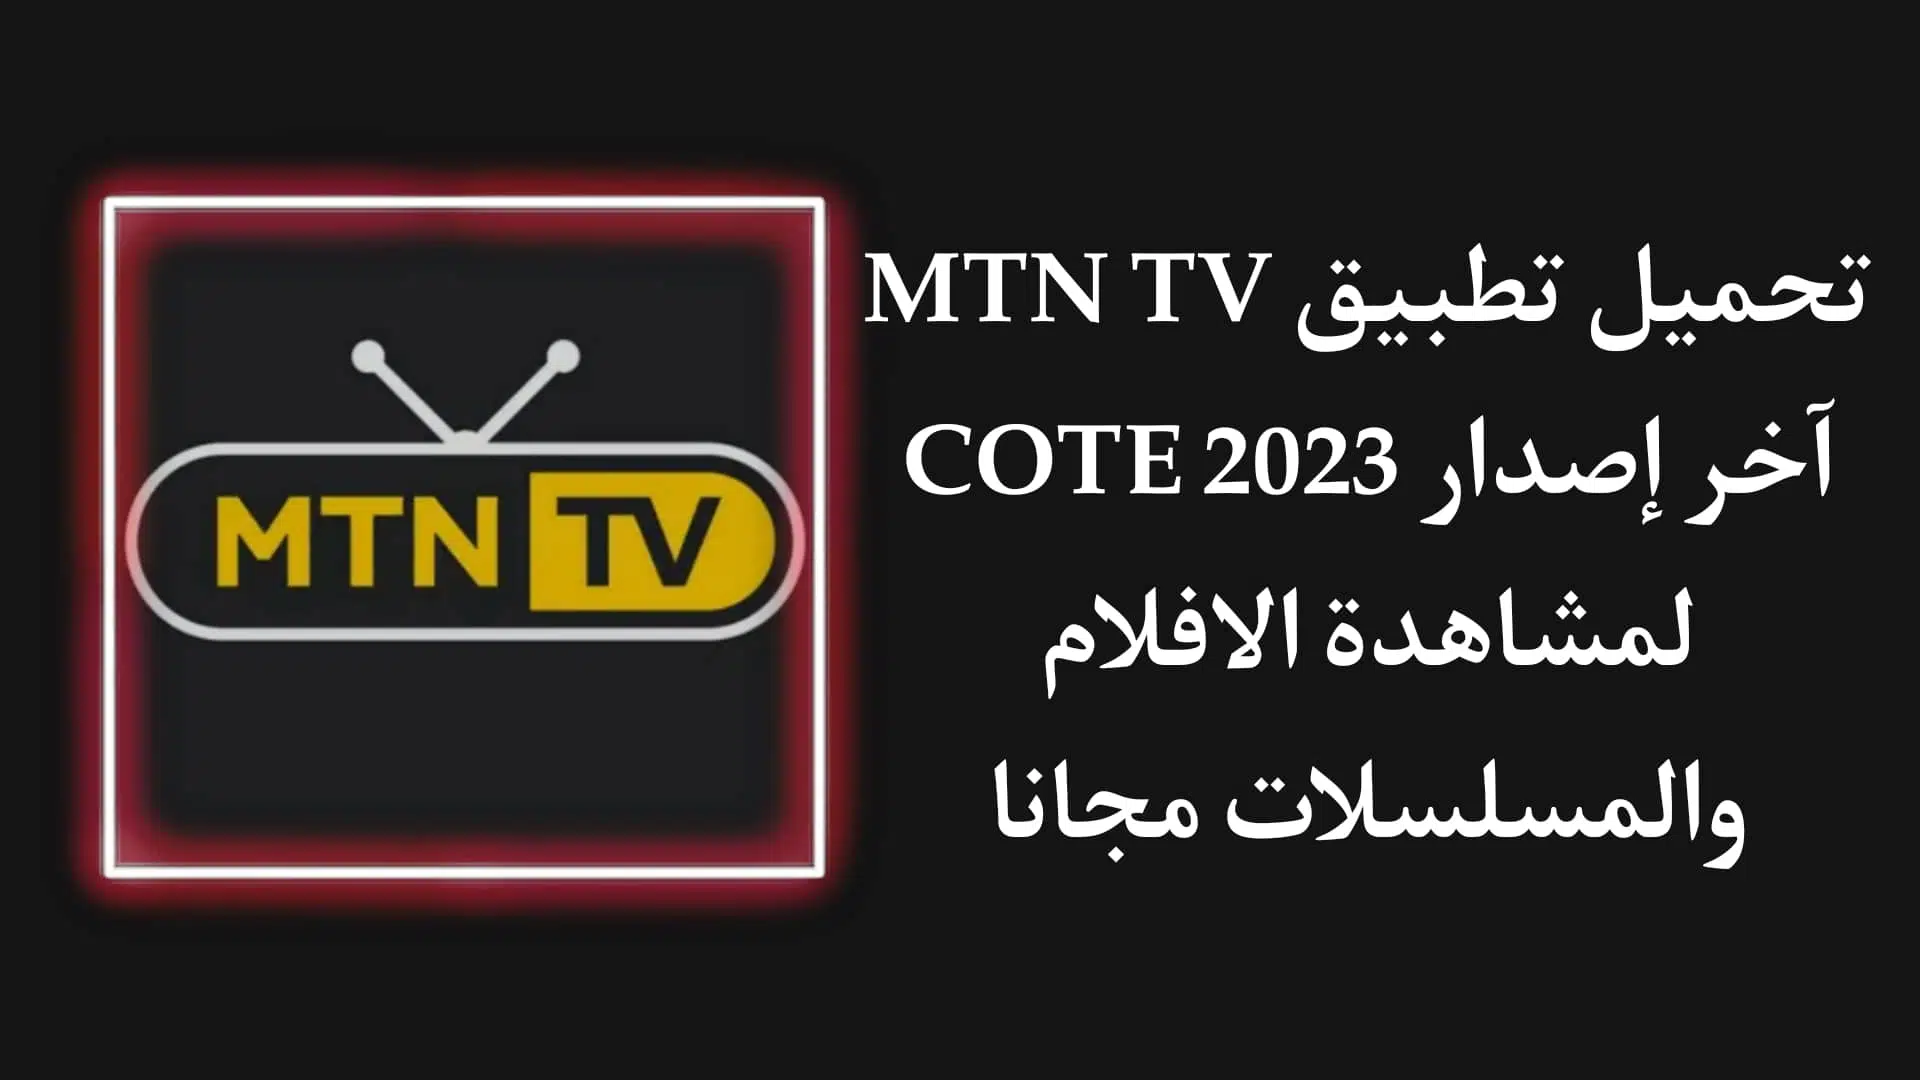 تحميل تطبيق MTN TV Cote d'Ivoire 2023 للاندرويد apk مجانا